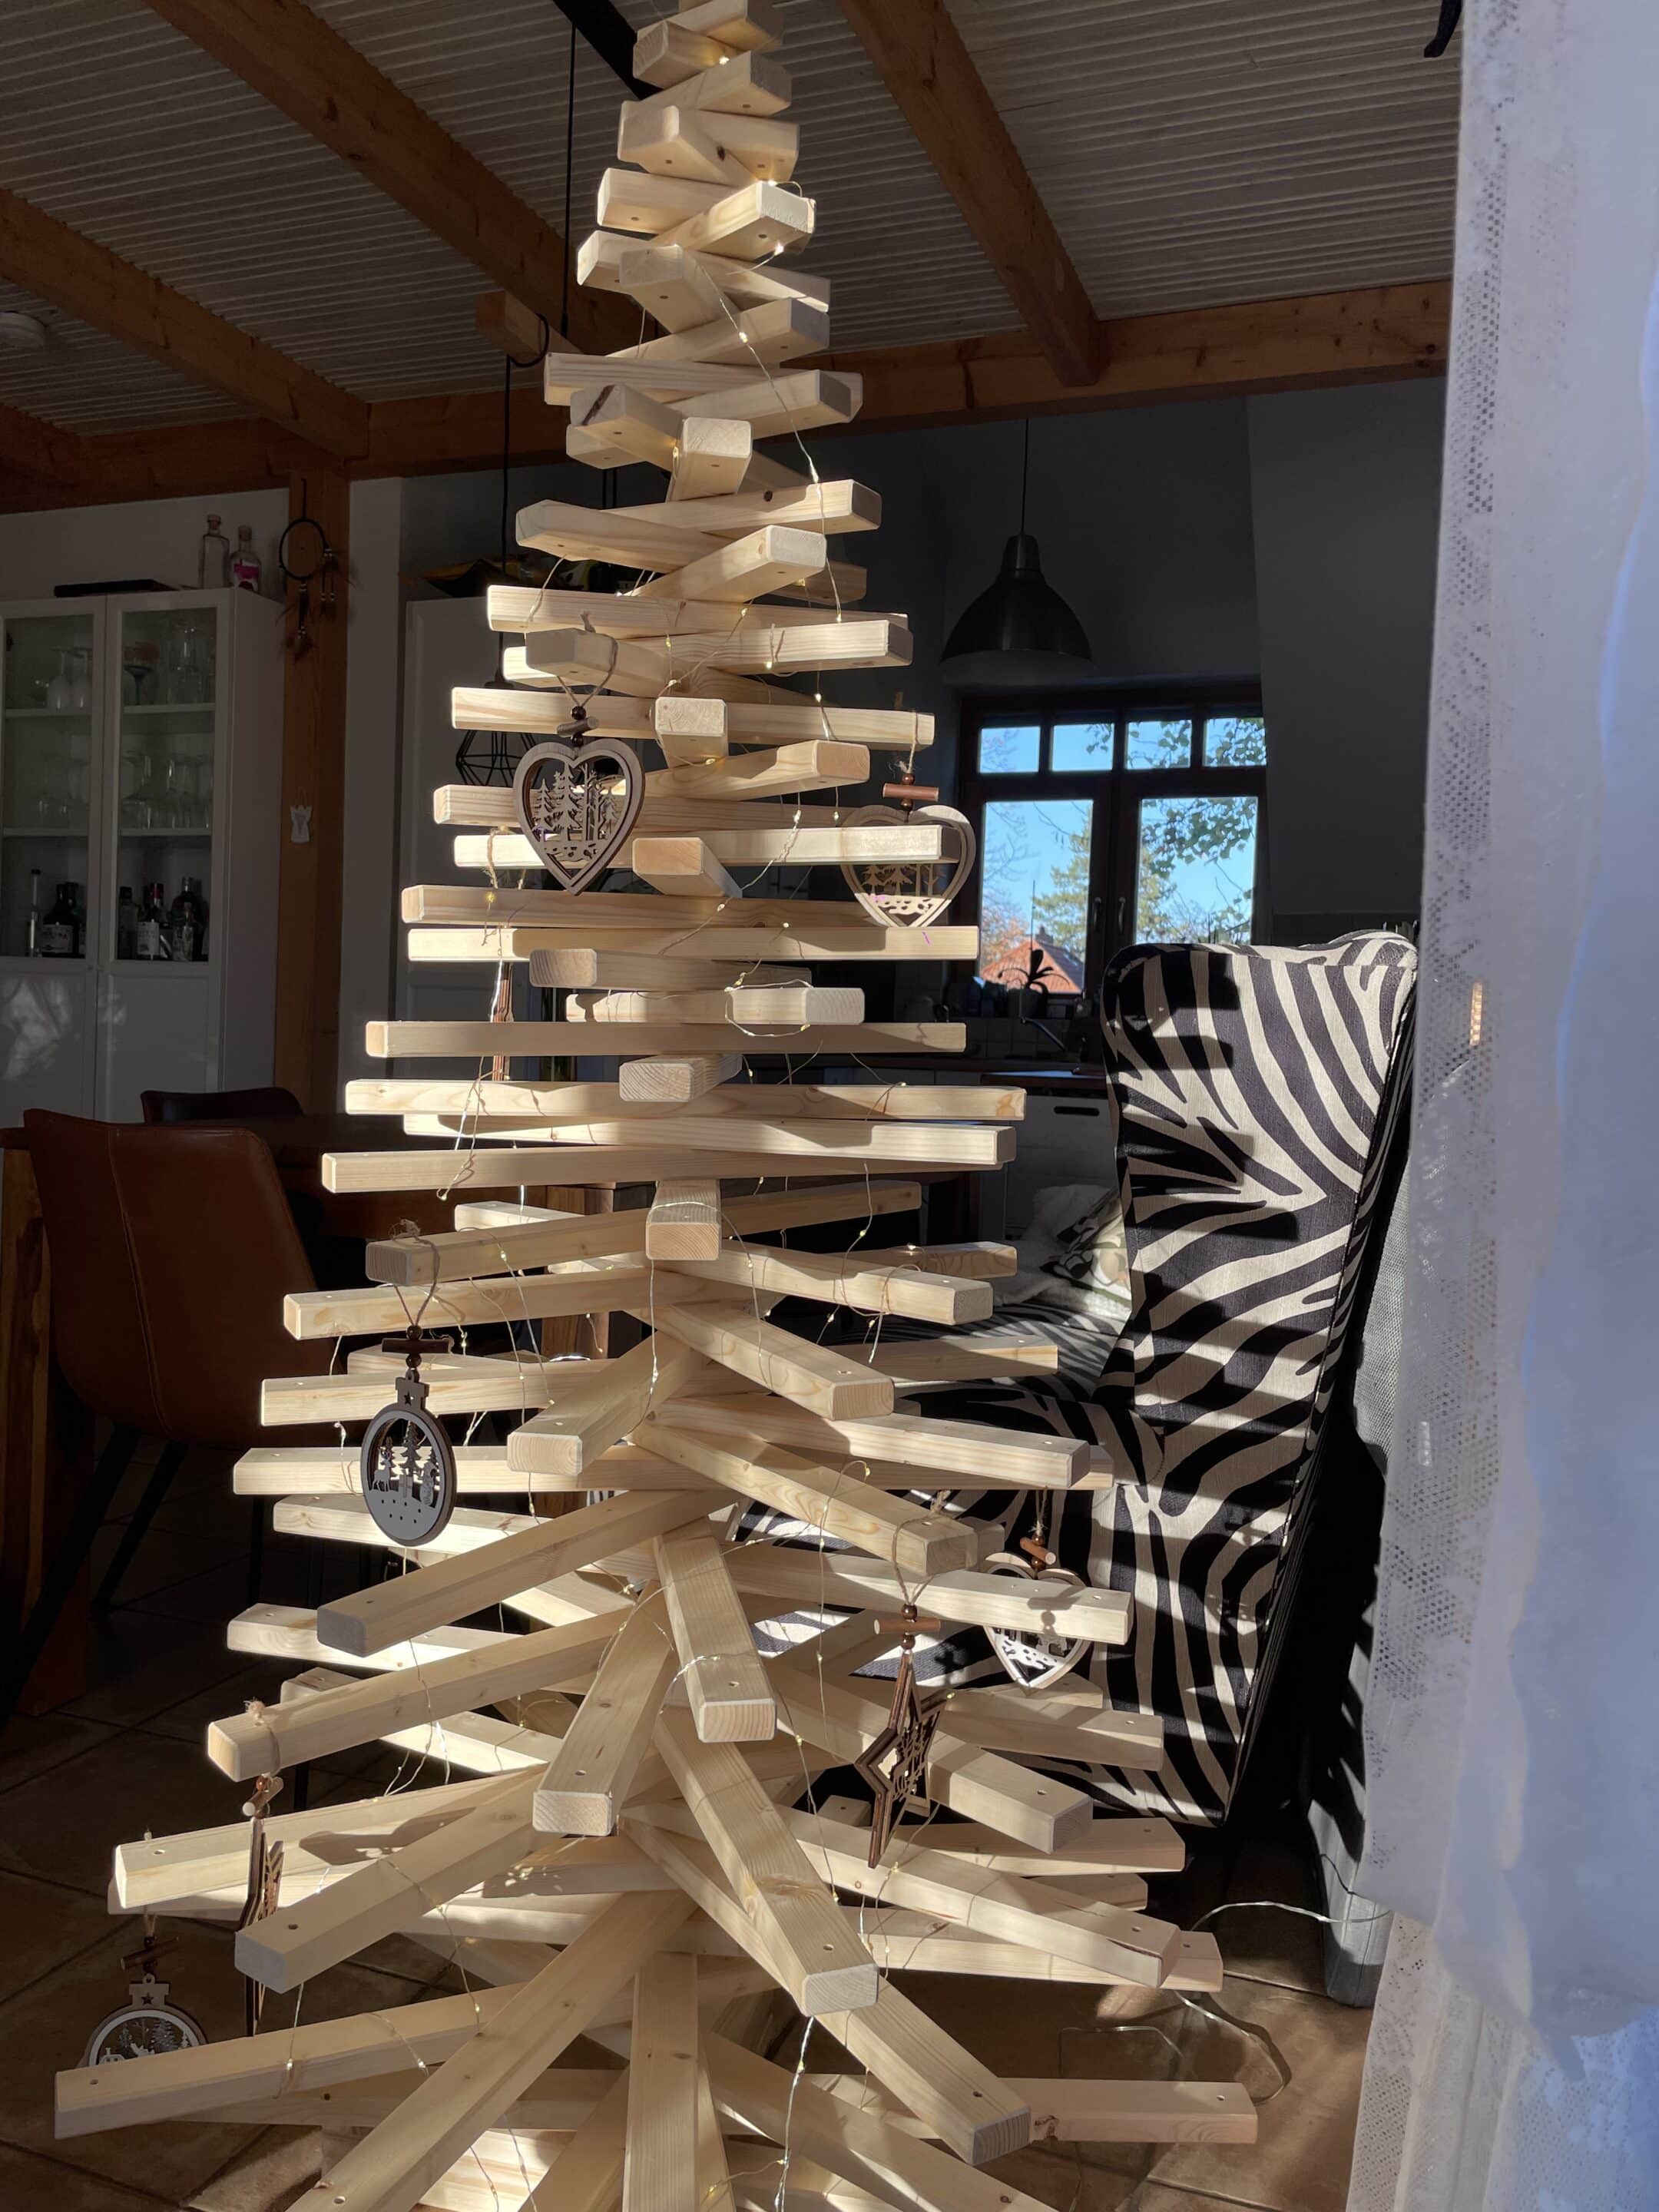 Dekorierter Christbaum aus Fichtenholz vor einem Fenster, beleuchtet mit einer Lichterkette